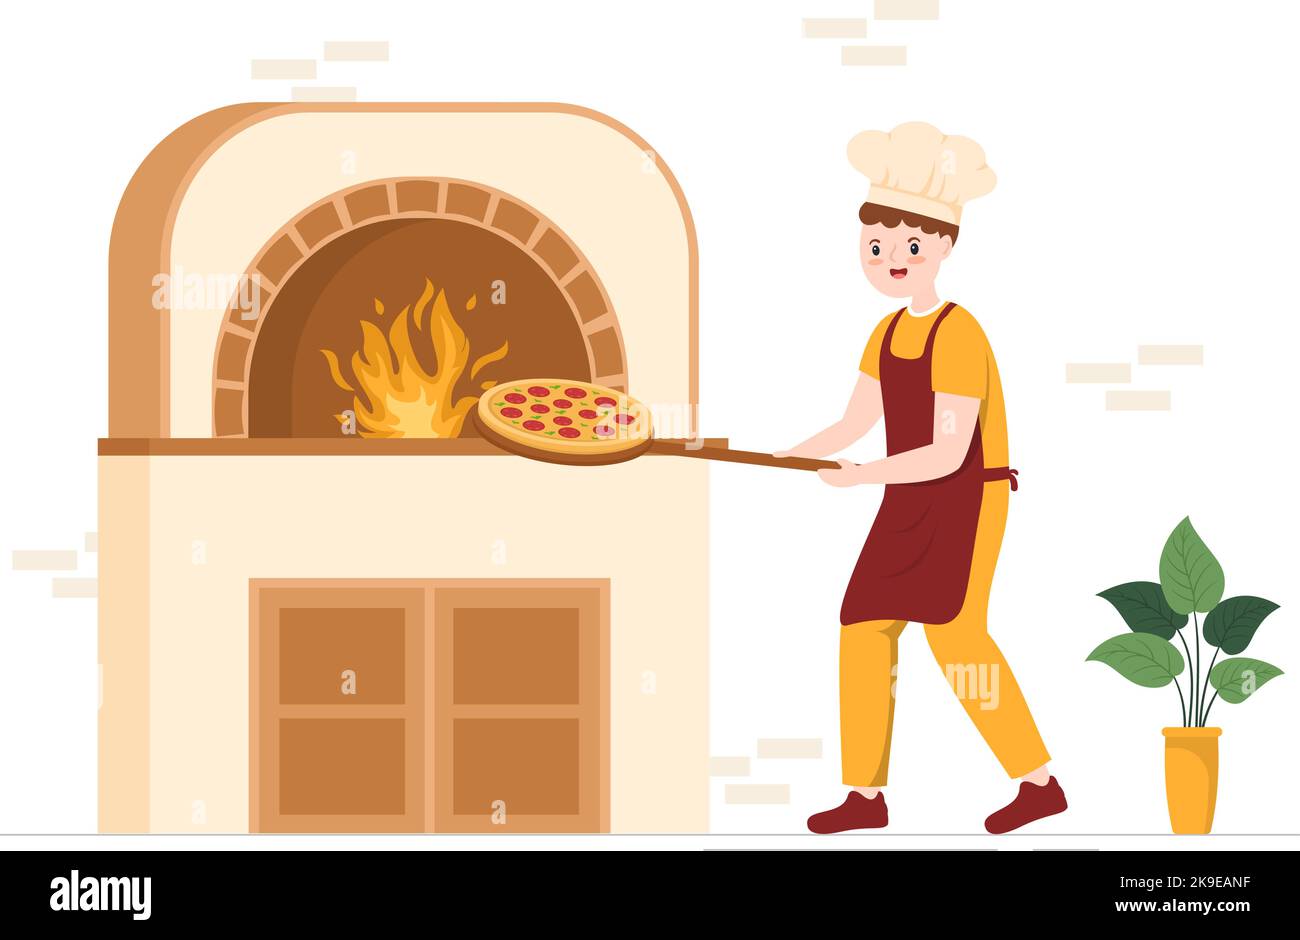 Italian Food Restaurant o Cafeteria con Chef Making piatti tradizionali italiani Pizza disegnata a mano Cartoon Template Illustrazione Illustrazione Vettoriale